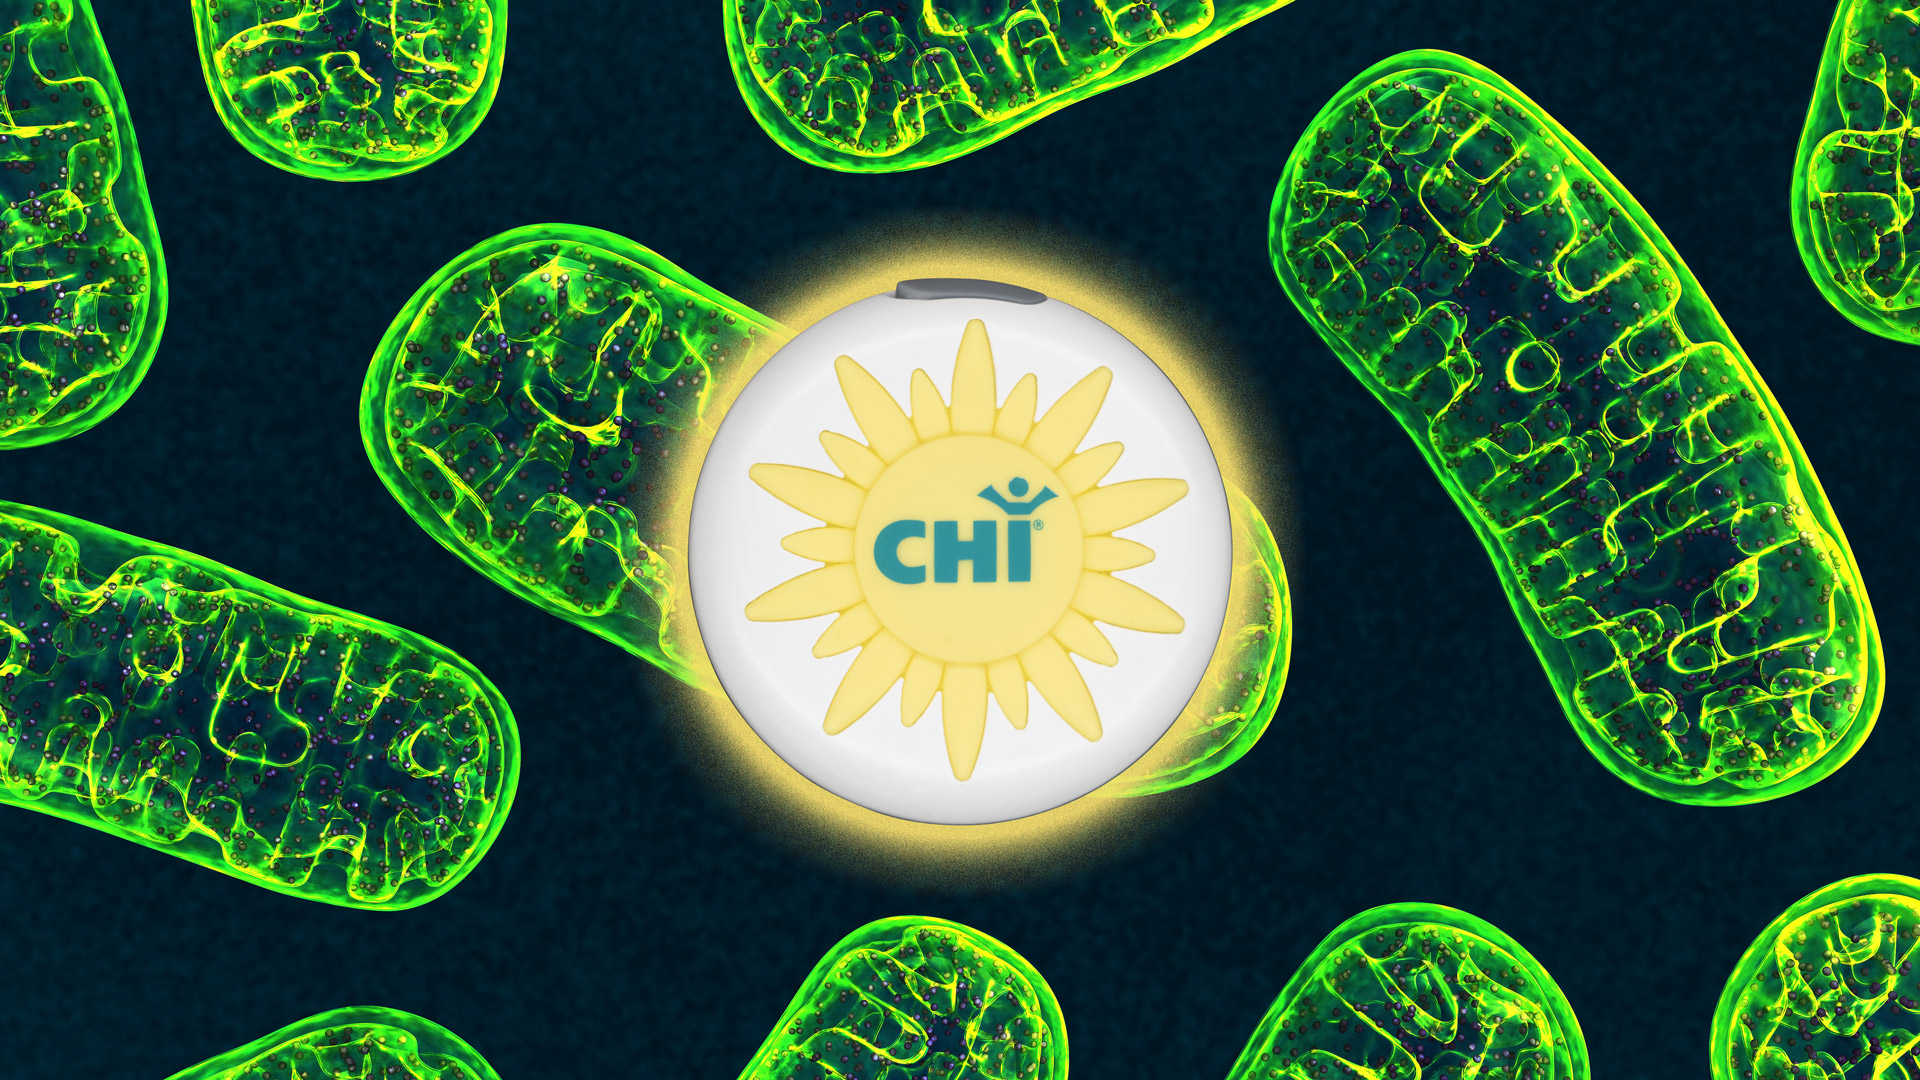 CHI Sun and Mitochondria